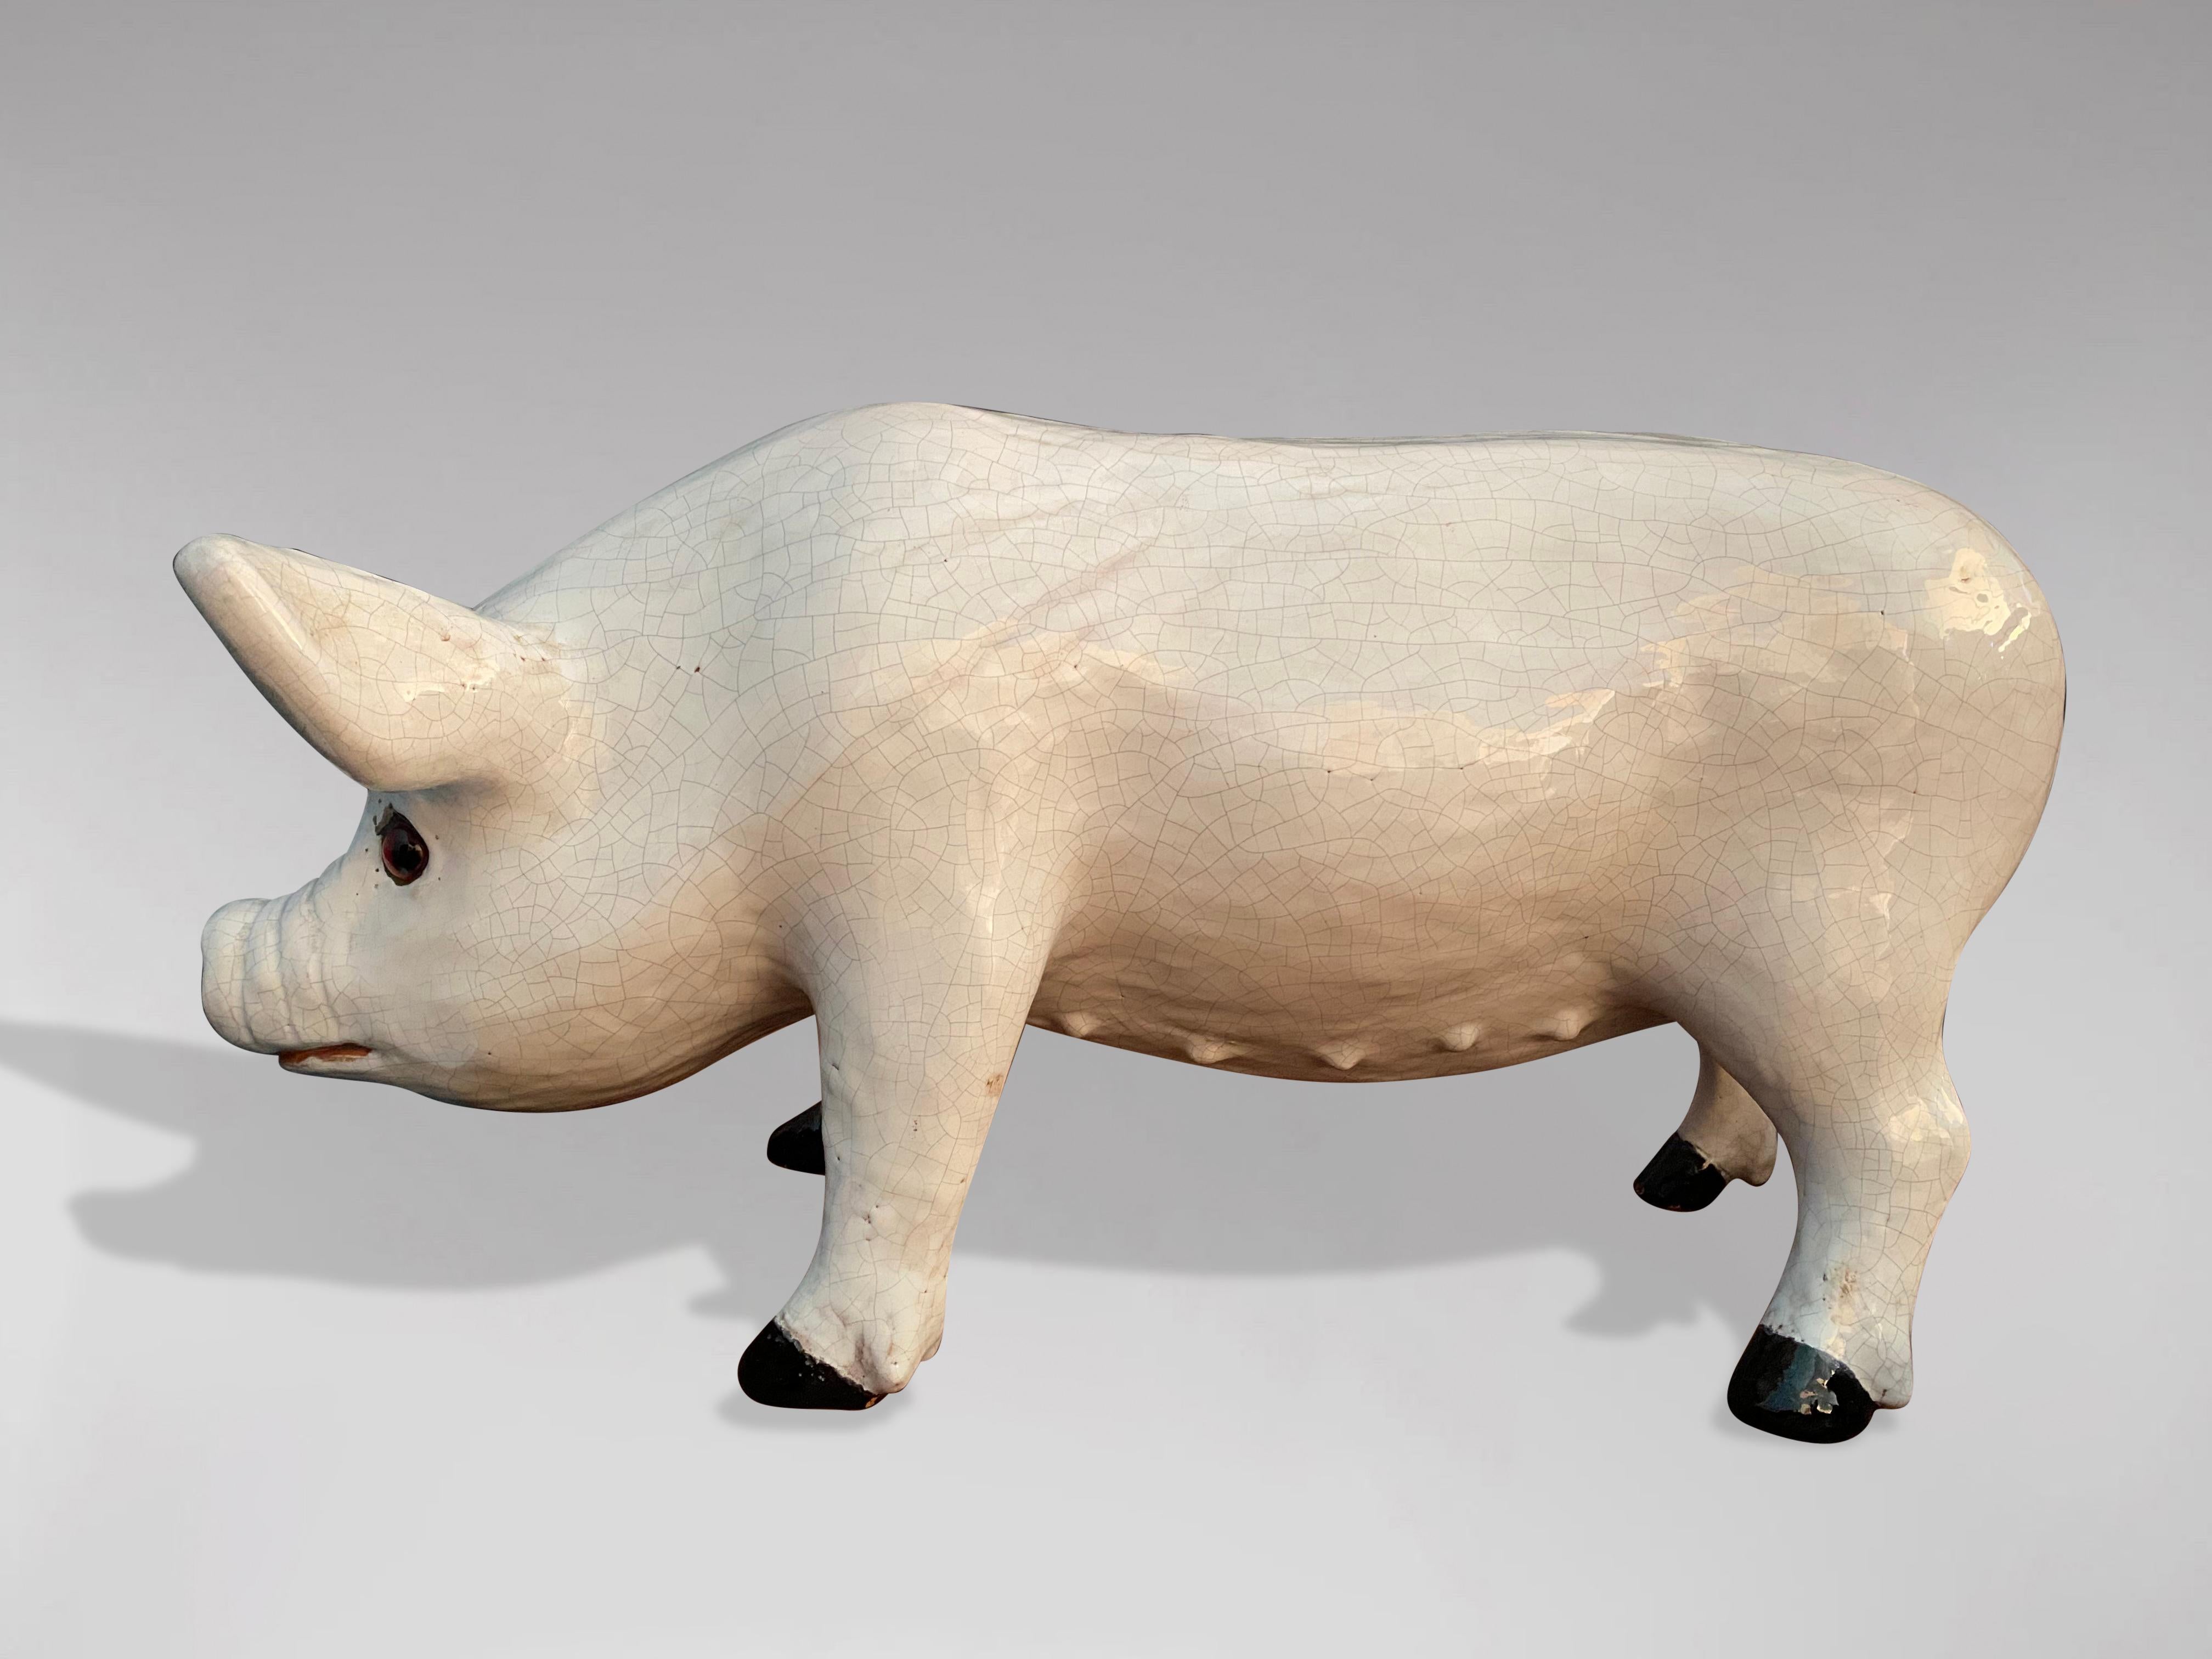 Eine großartig aussehende französische Schweineskulptur aus dem späten 19. Jahrhundert in Steingut aus Bavent in der Normandie. Das Pigment der verschiedenen Weißschattierungen und das ausdrucksstarke Aussehen zeugen von der Qualität der